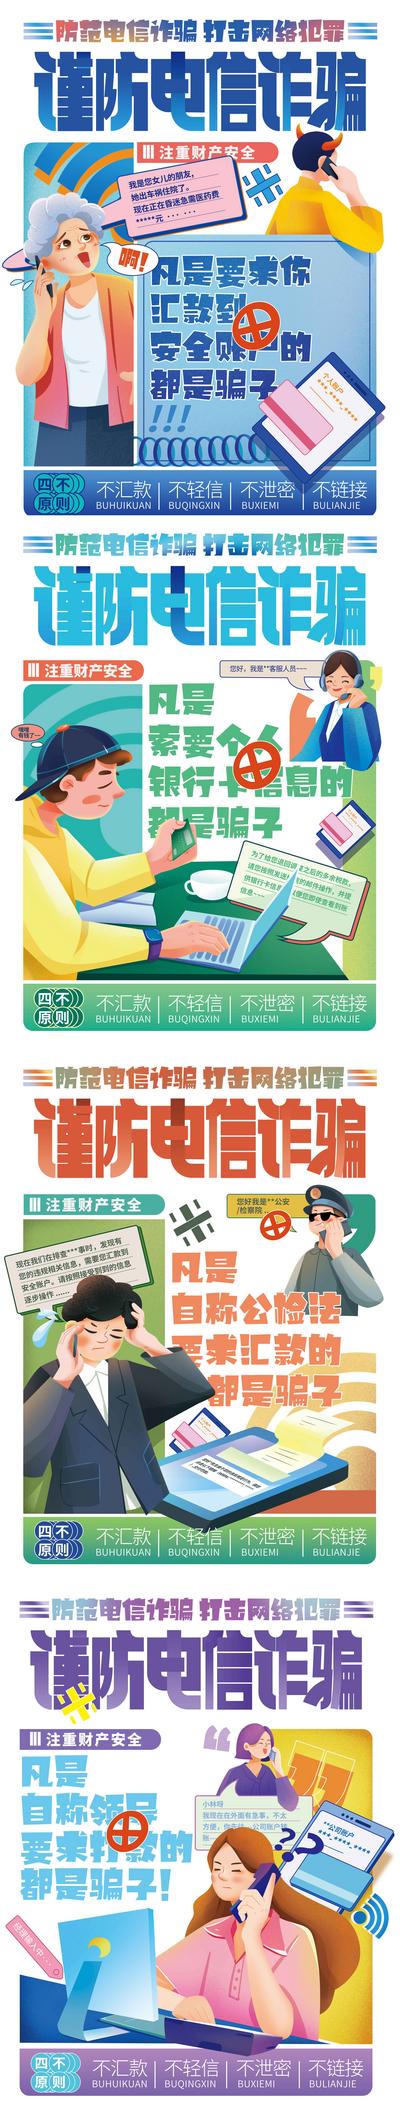 南门网 海报 防电信诈骗 宣传 插画